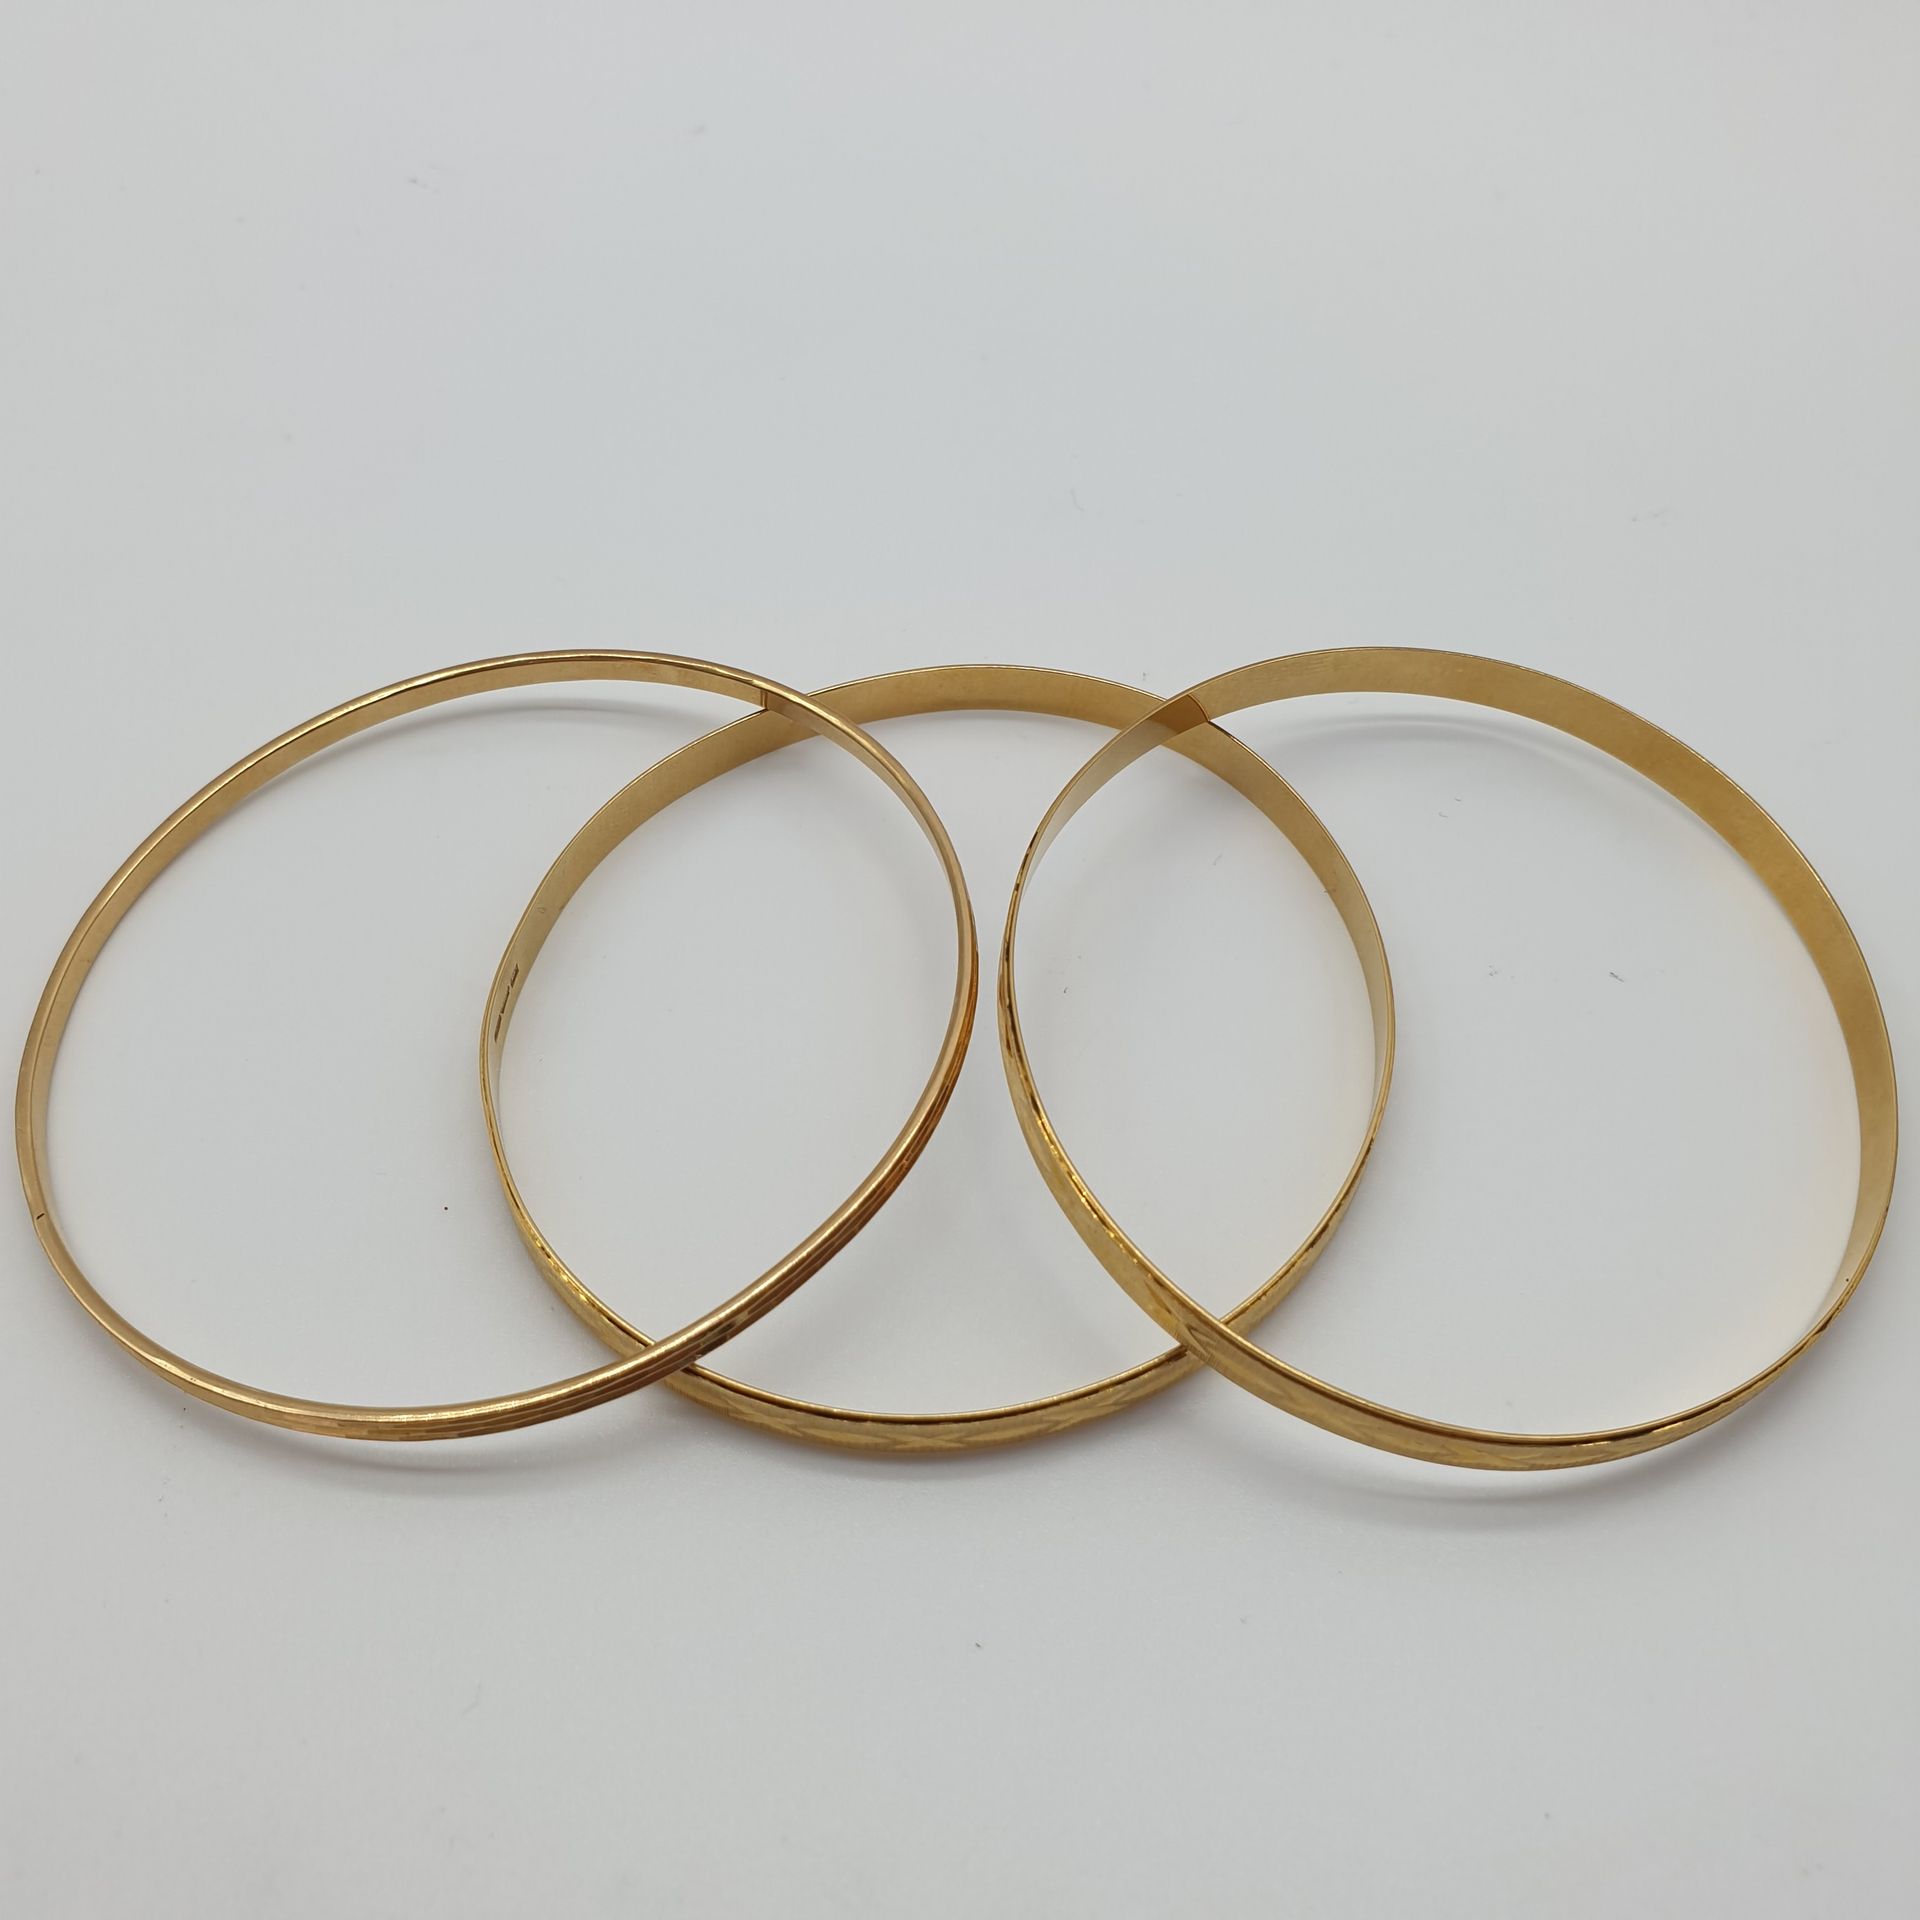 Null DREI Armbänder aus 750° Gelbgold mit ziselierten Ringen.

Gewicht: 26,99 g